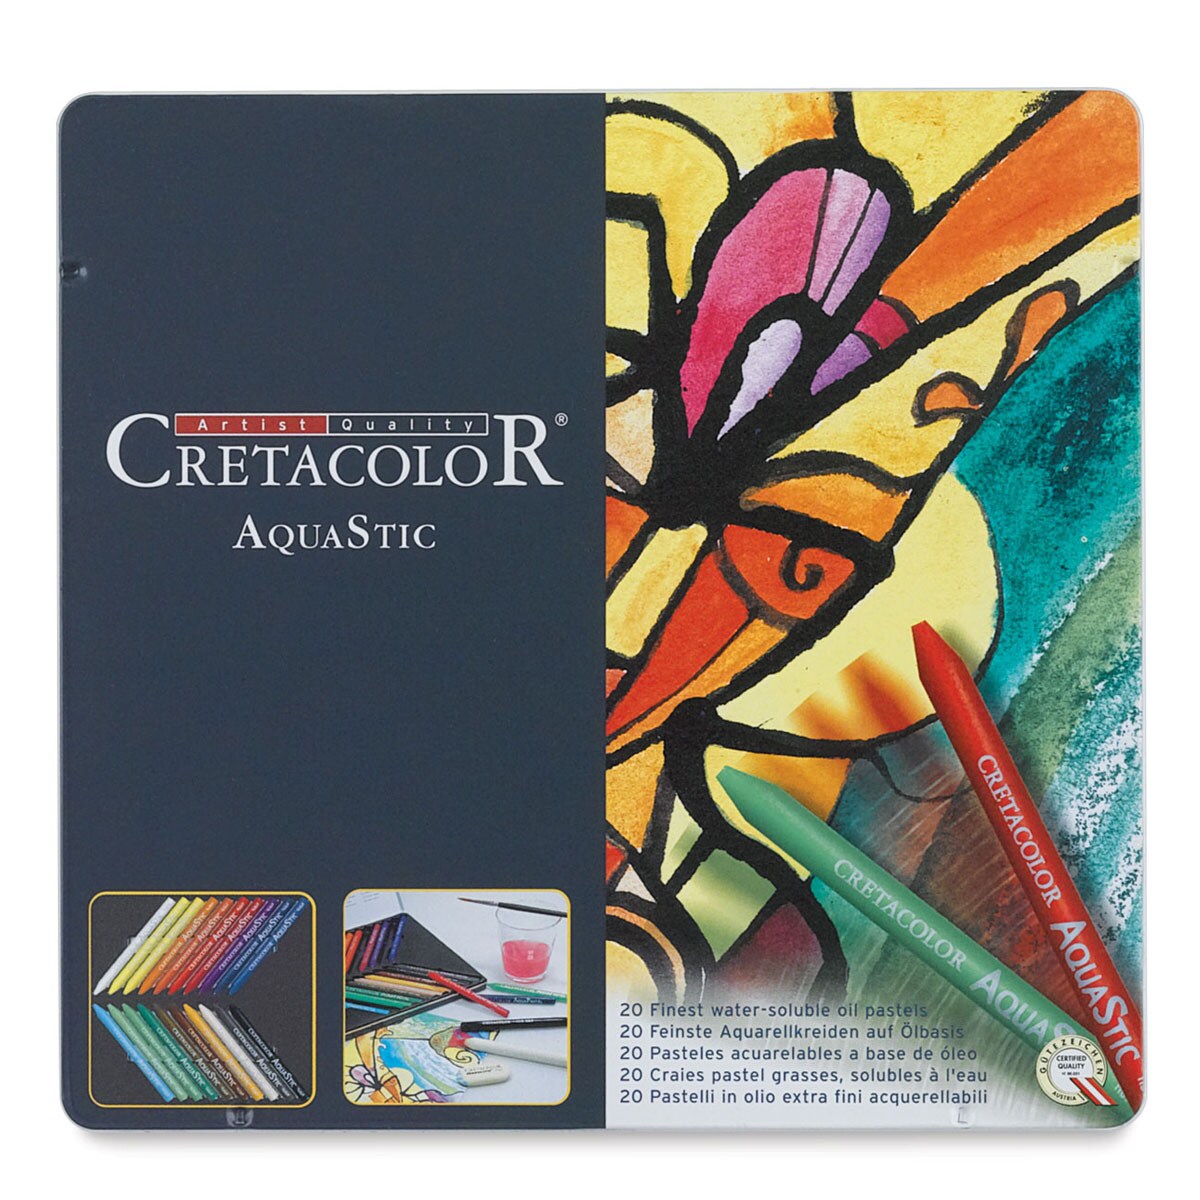 Cretacolor AquaStic Oil Pastel Art Set